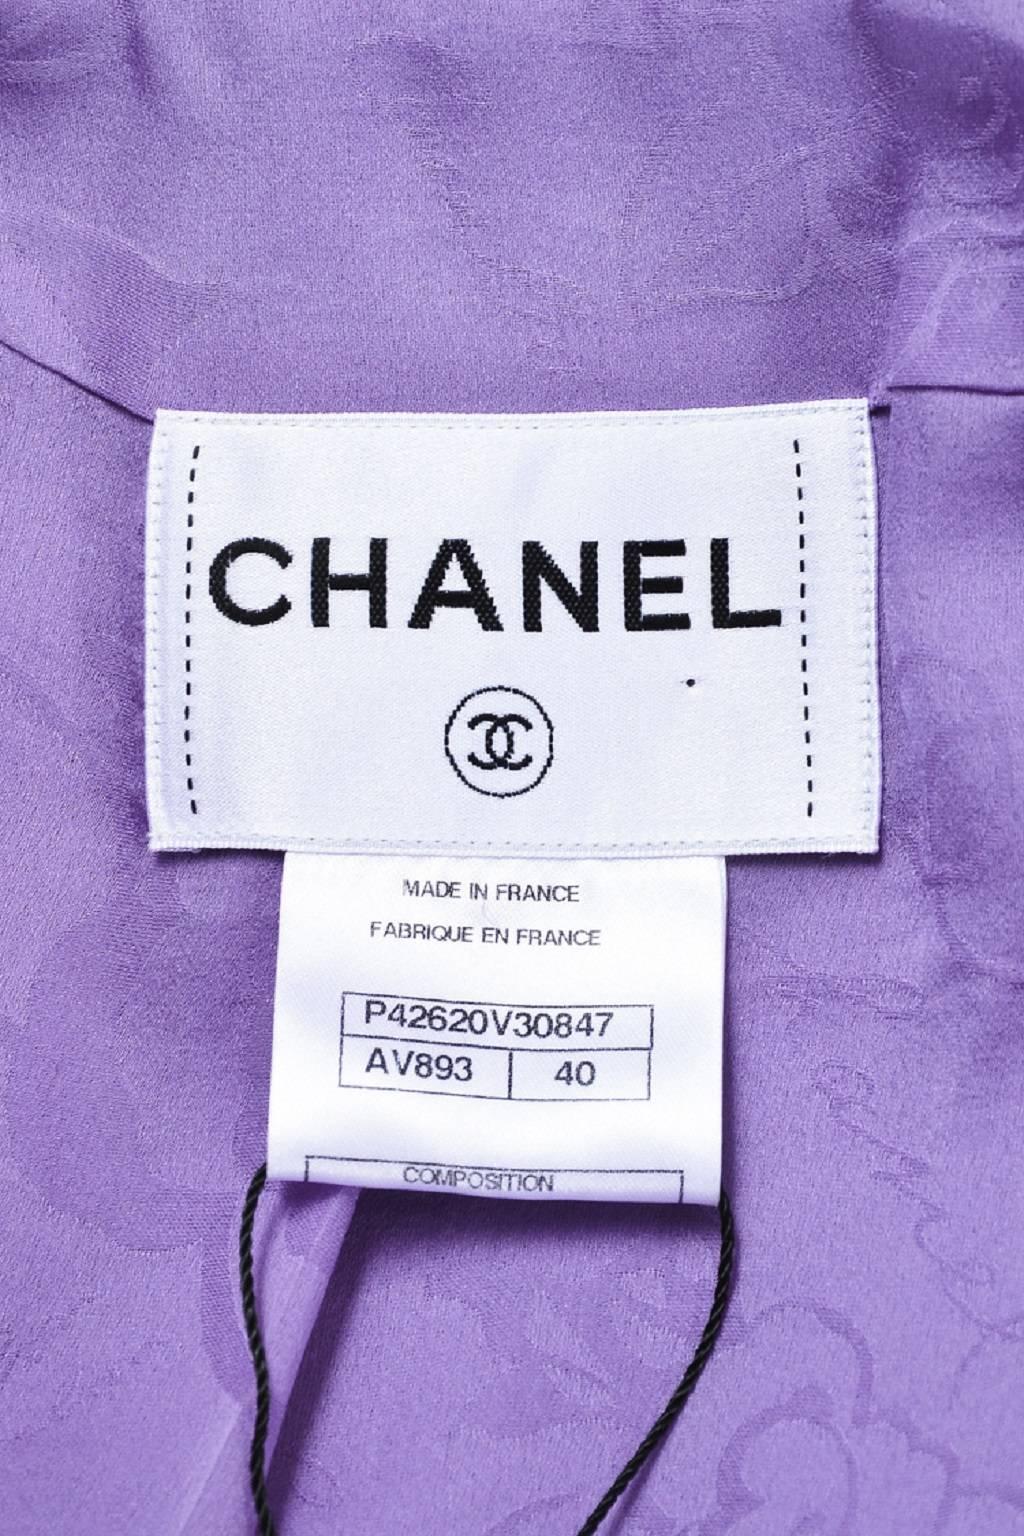 Chanel $4535 Lavender Purple Wool Boucle 'CC' Cabochon Button Jacket SZ 40 For Sale 1